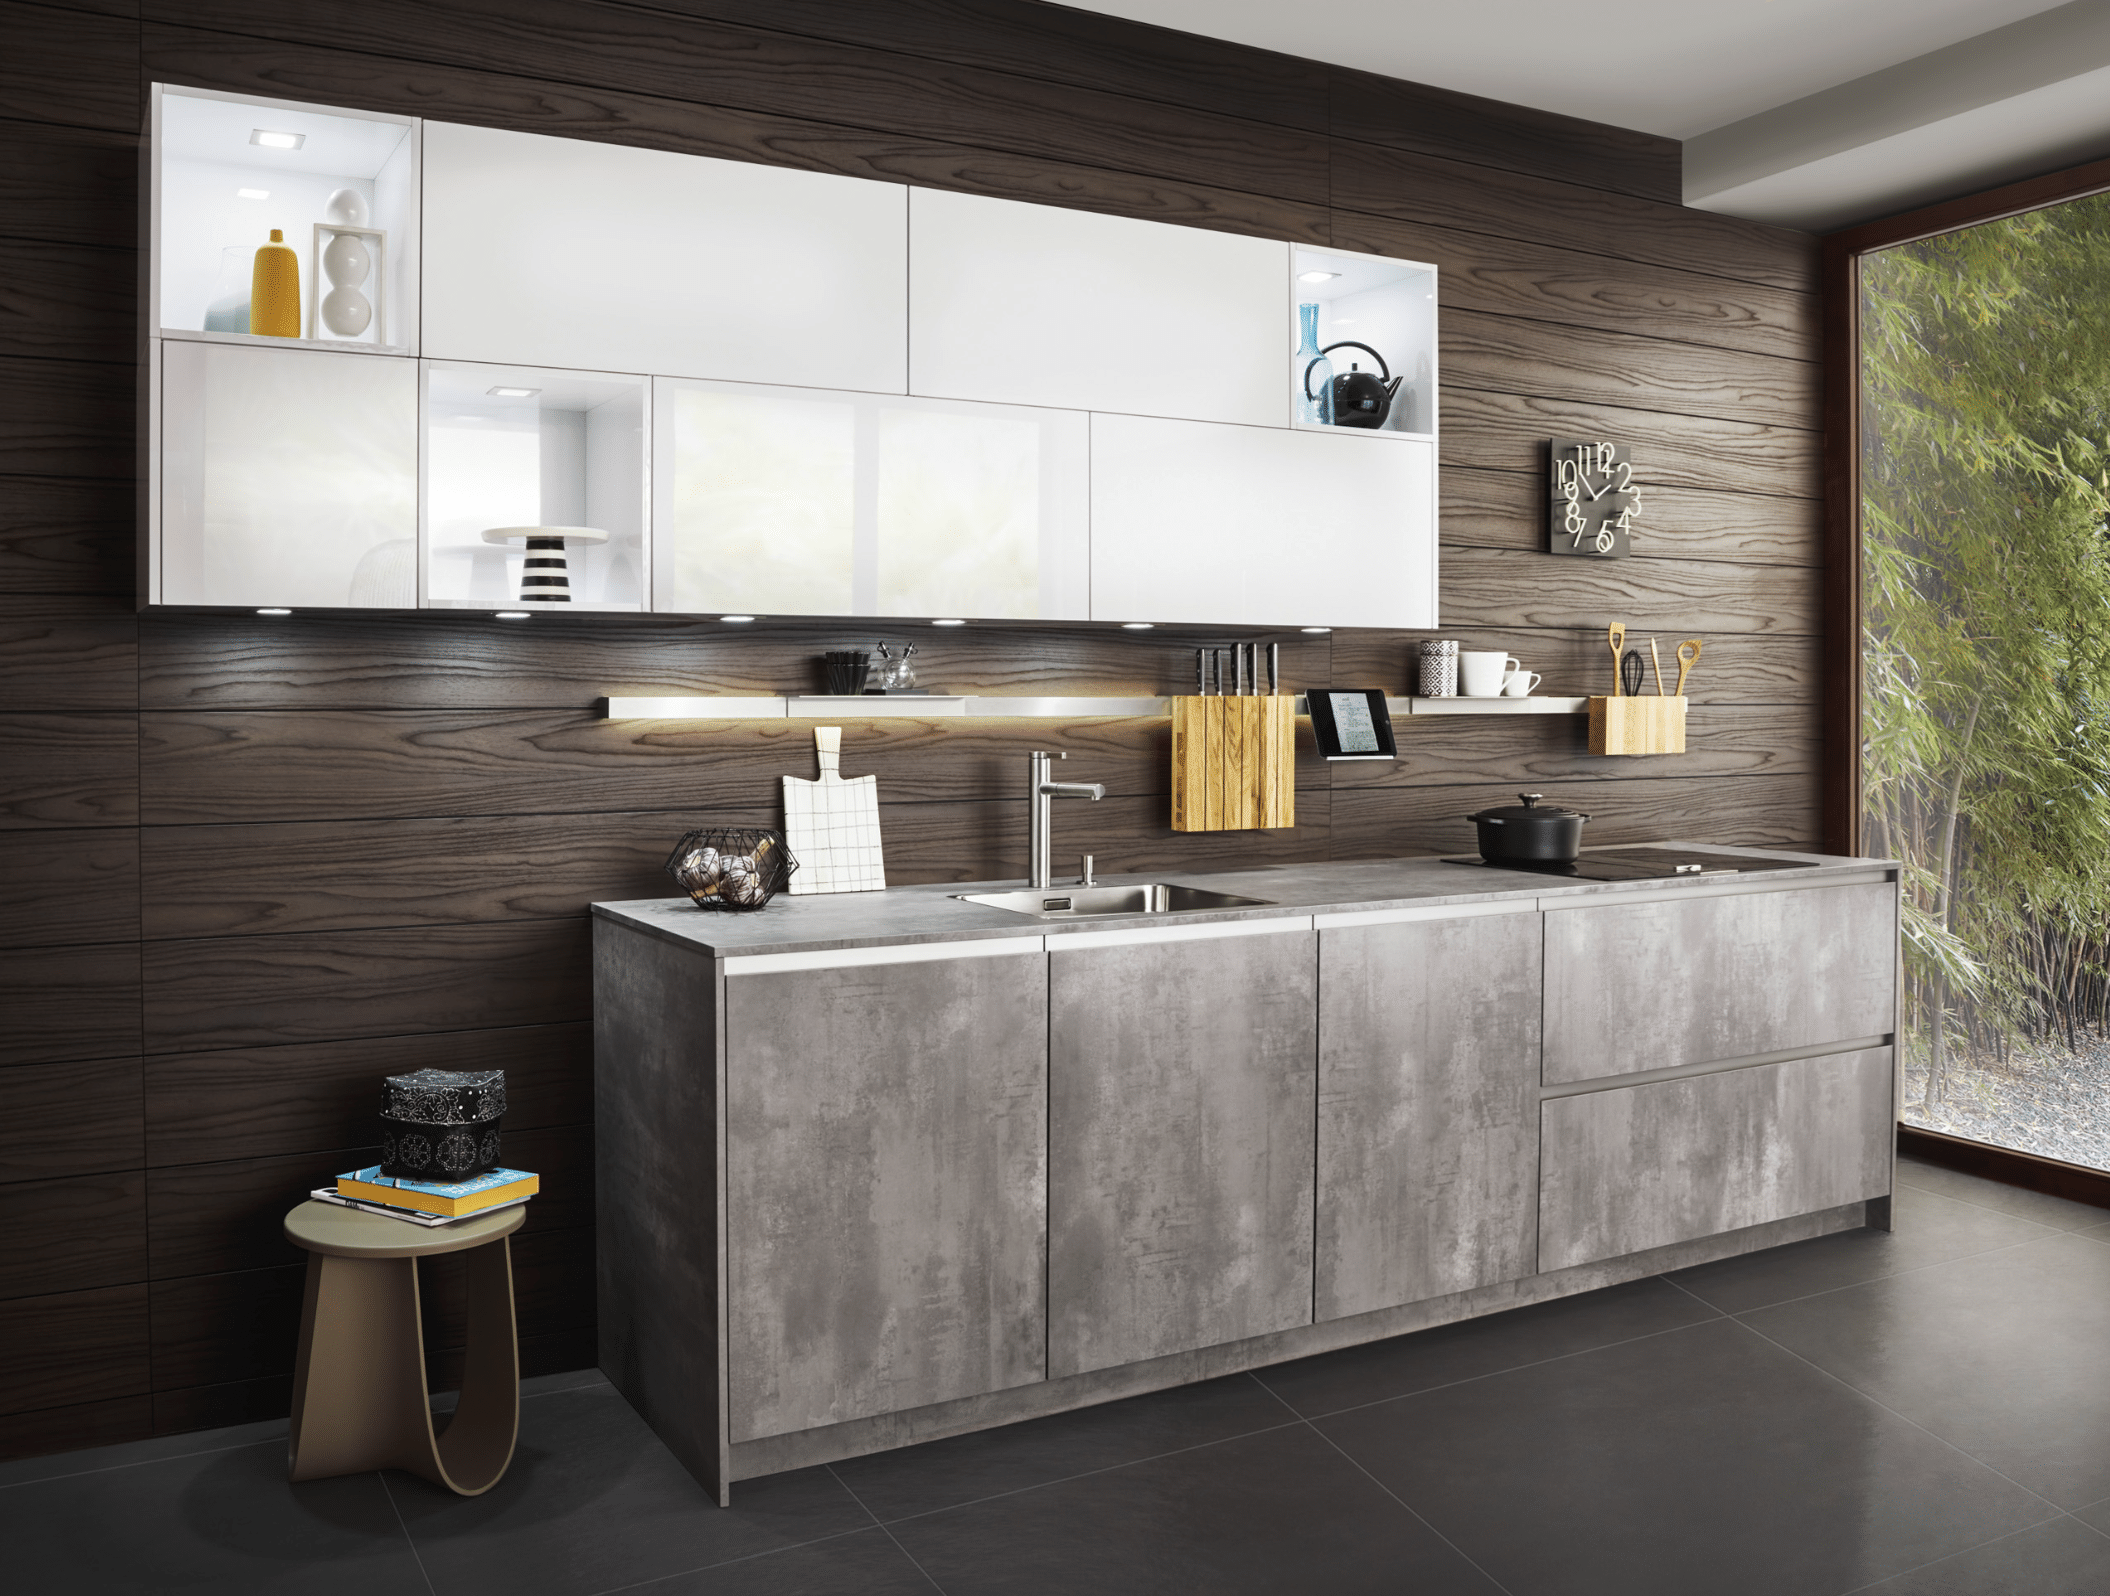 WOHNHAUS Grill & Ronacher zeigt eine moderne, grifflose Küchenzeile von LEICHT Küche mit Hängeschränken und Fronten in Weiß und Betonoptik.